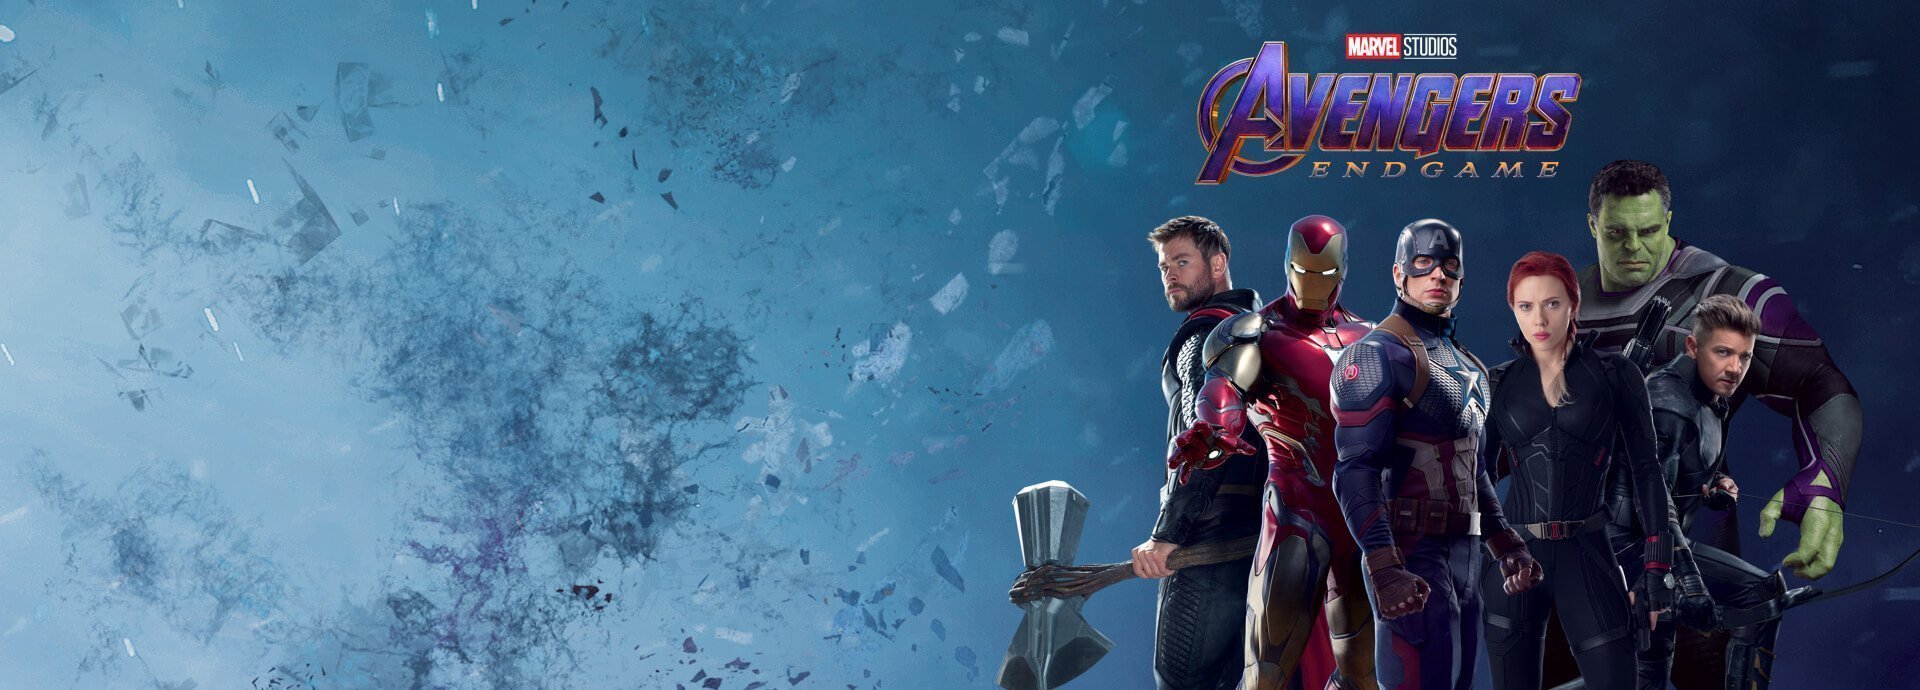 Deuxième image promotionnelle du film Avengers: Endgame présentant l'équipe composé des six Avengers d'origine